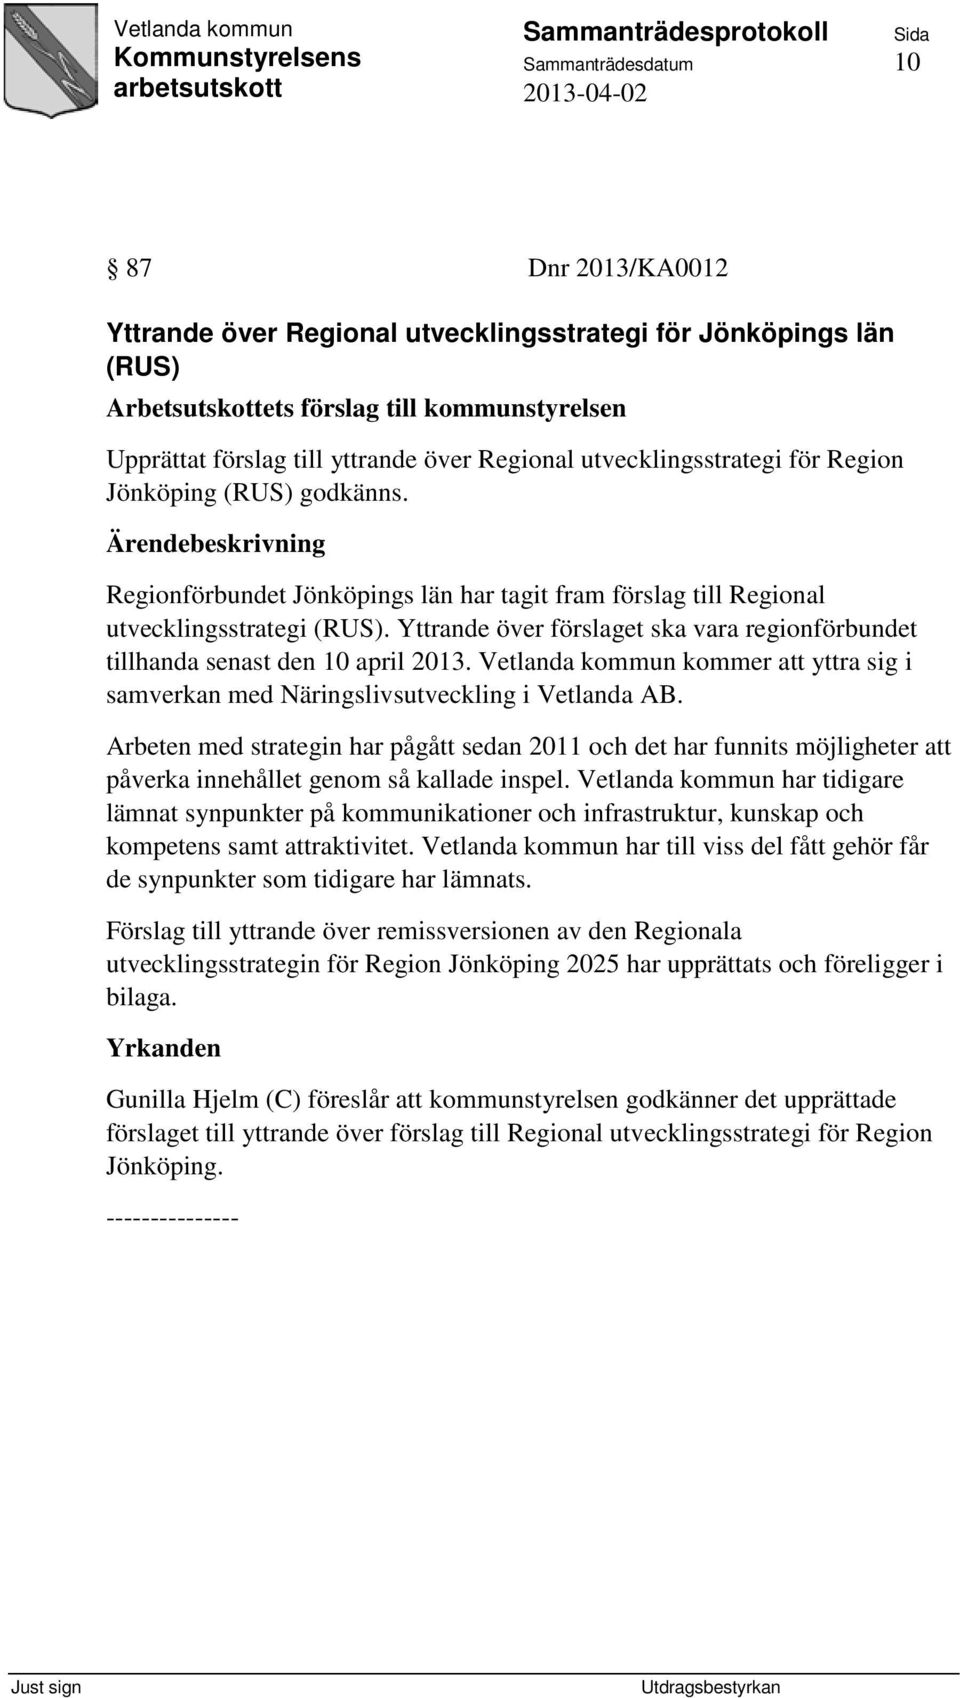 Yttrande över förslaget ska vara regionförbundet tillhanda senast den 10 april 2013. Vetlanda kommun kommer att yttra sig i samverkan med Näringslivsutveckling i Vetlanda AB.